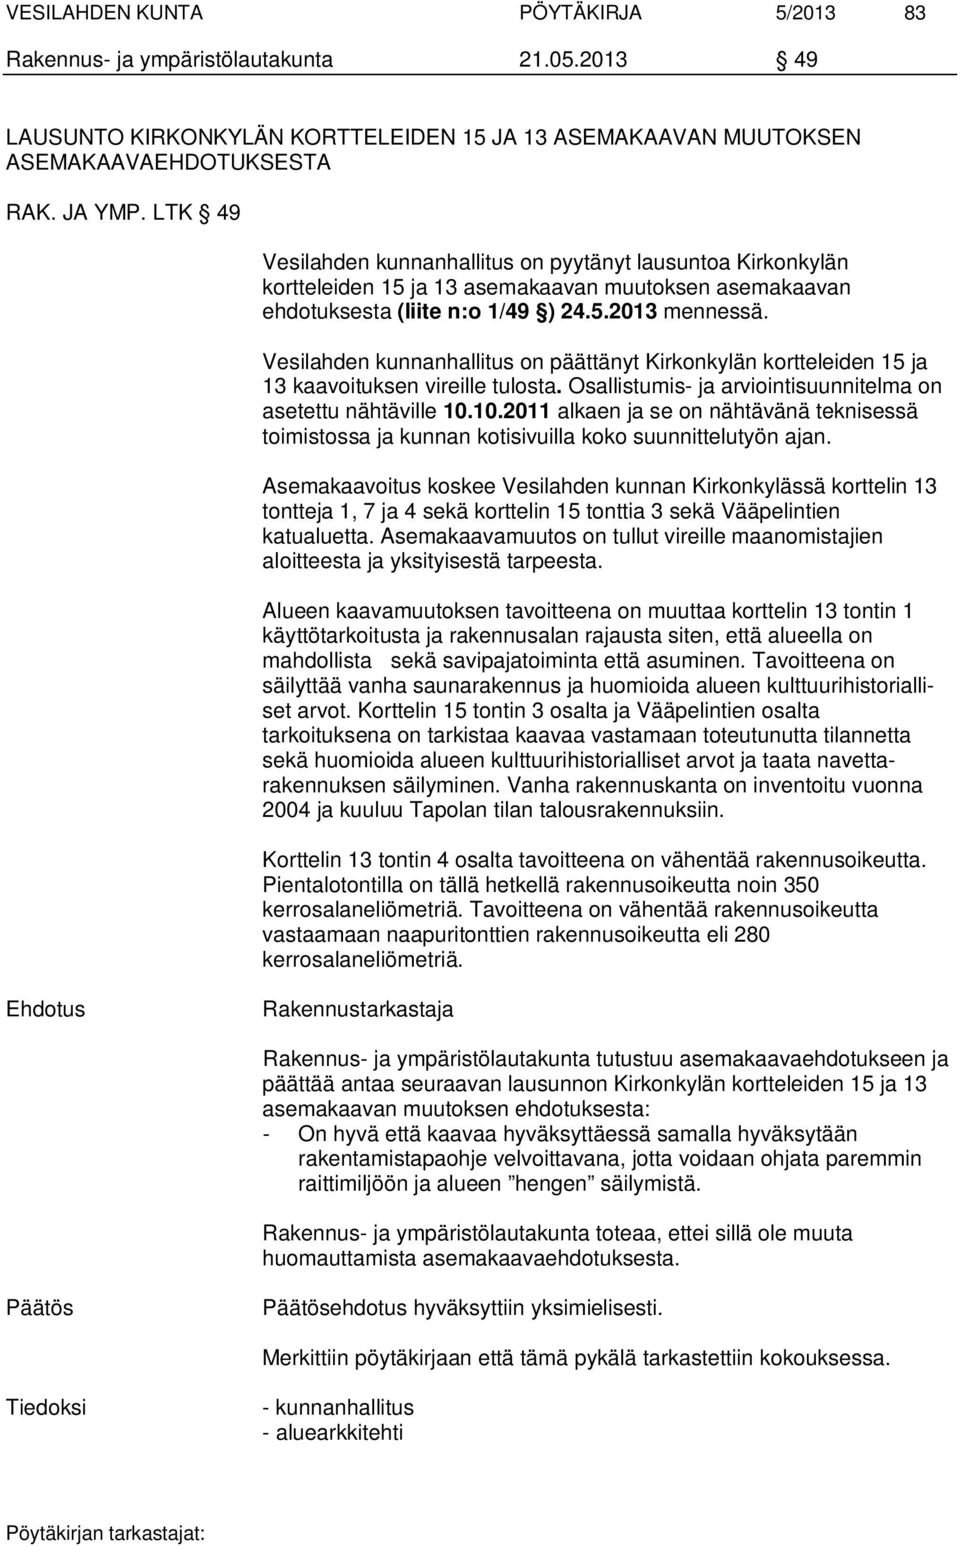 Vesilahden kunnanhallitus on päättänyt Kirkonkylän kortteleiden 15 ja 13 kaavoituksen vireille tulosta. Osallistumis- ja arviointisuunnitelma on asetettu nähtäville 10.